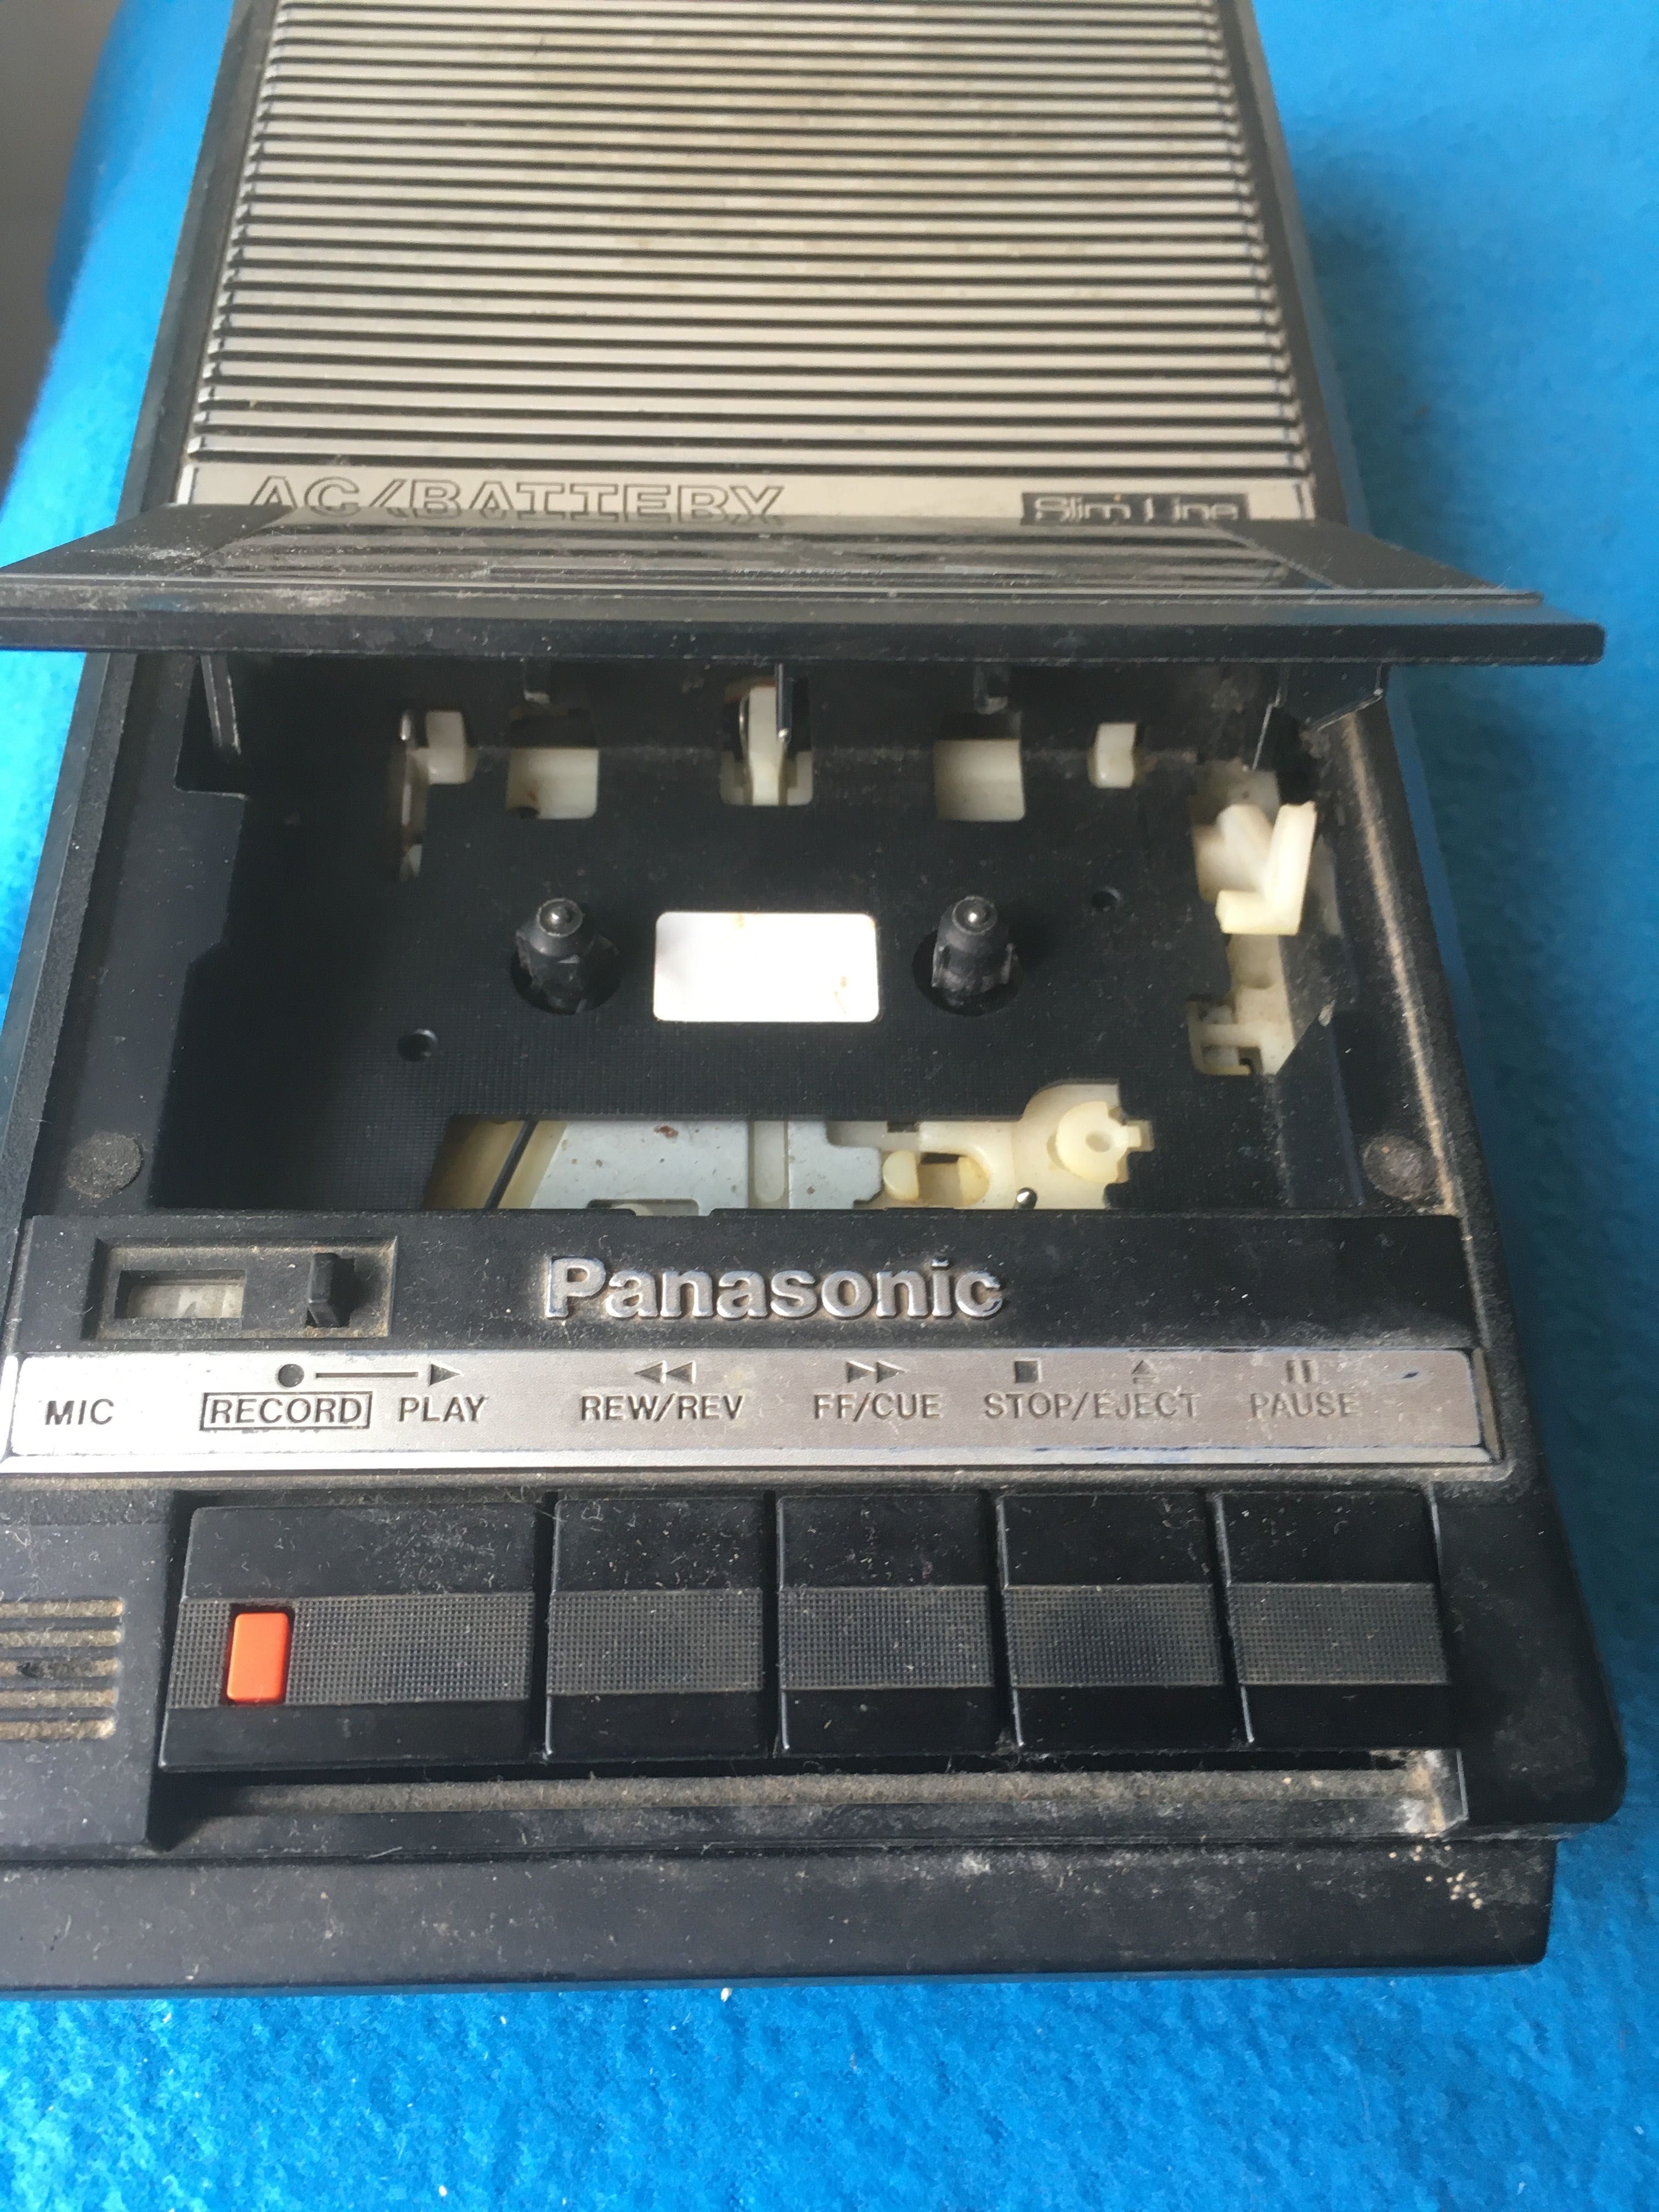 Раритет Касетний магнітофон Panasonic RQ-2104 Переносний, 80-х років